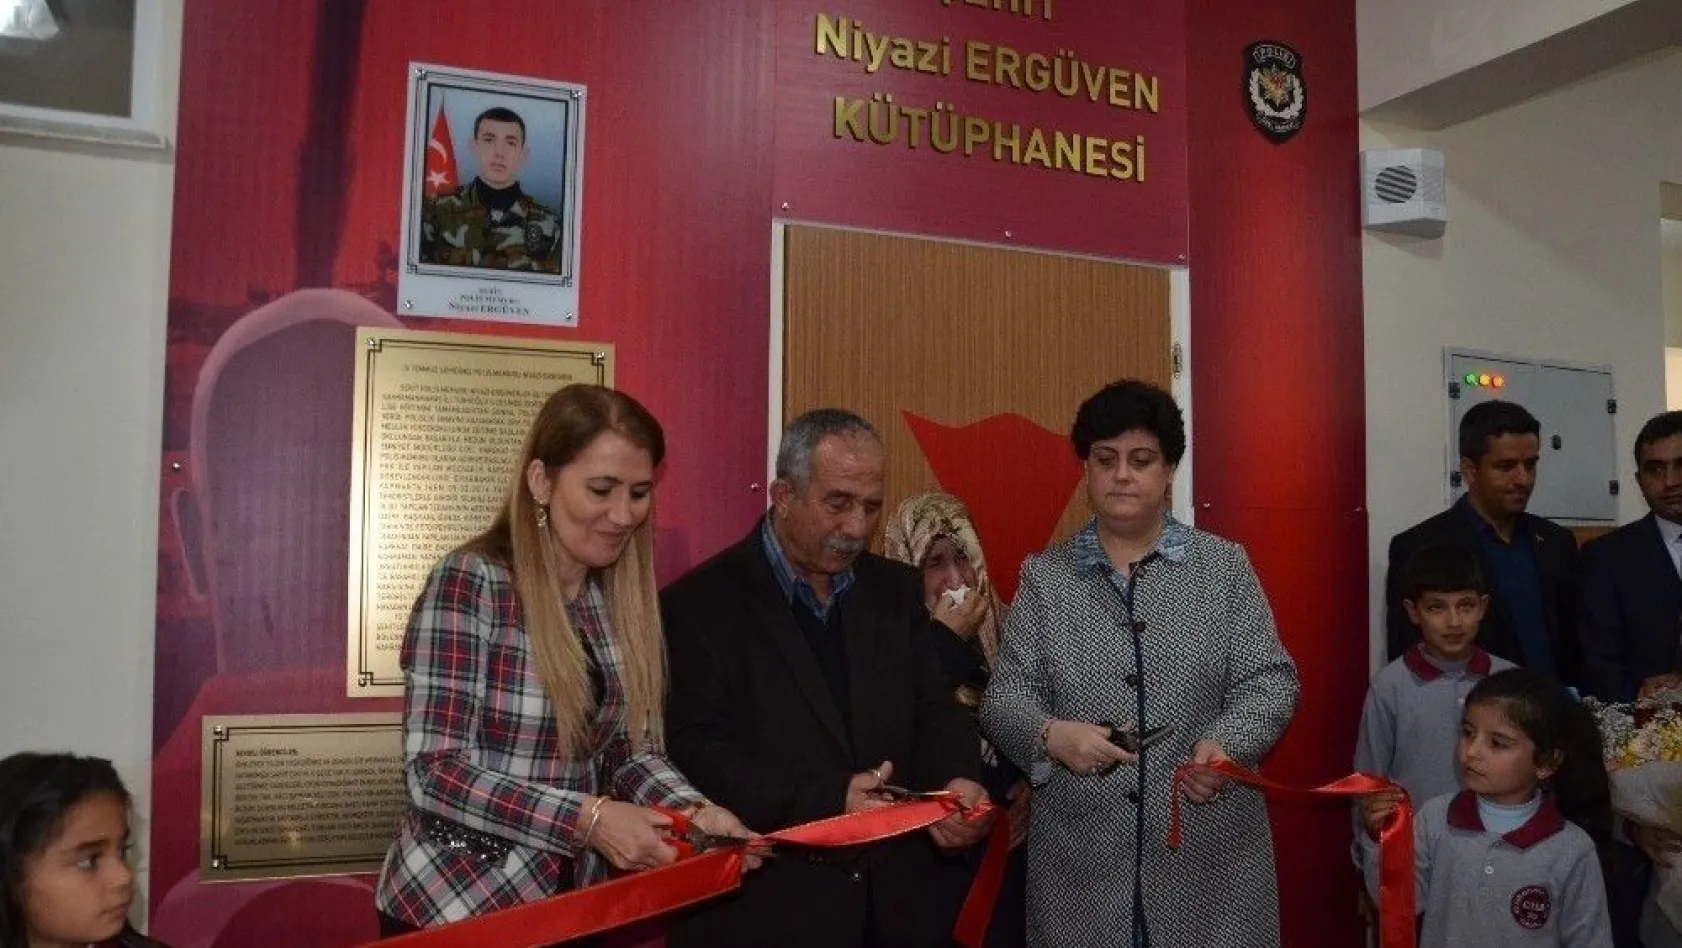 Şehit Niyazi Ergüven Kütüphanesi açıldı
